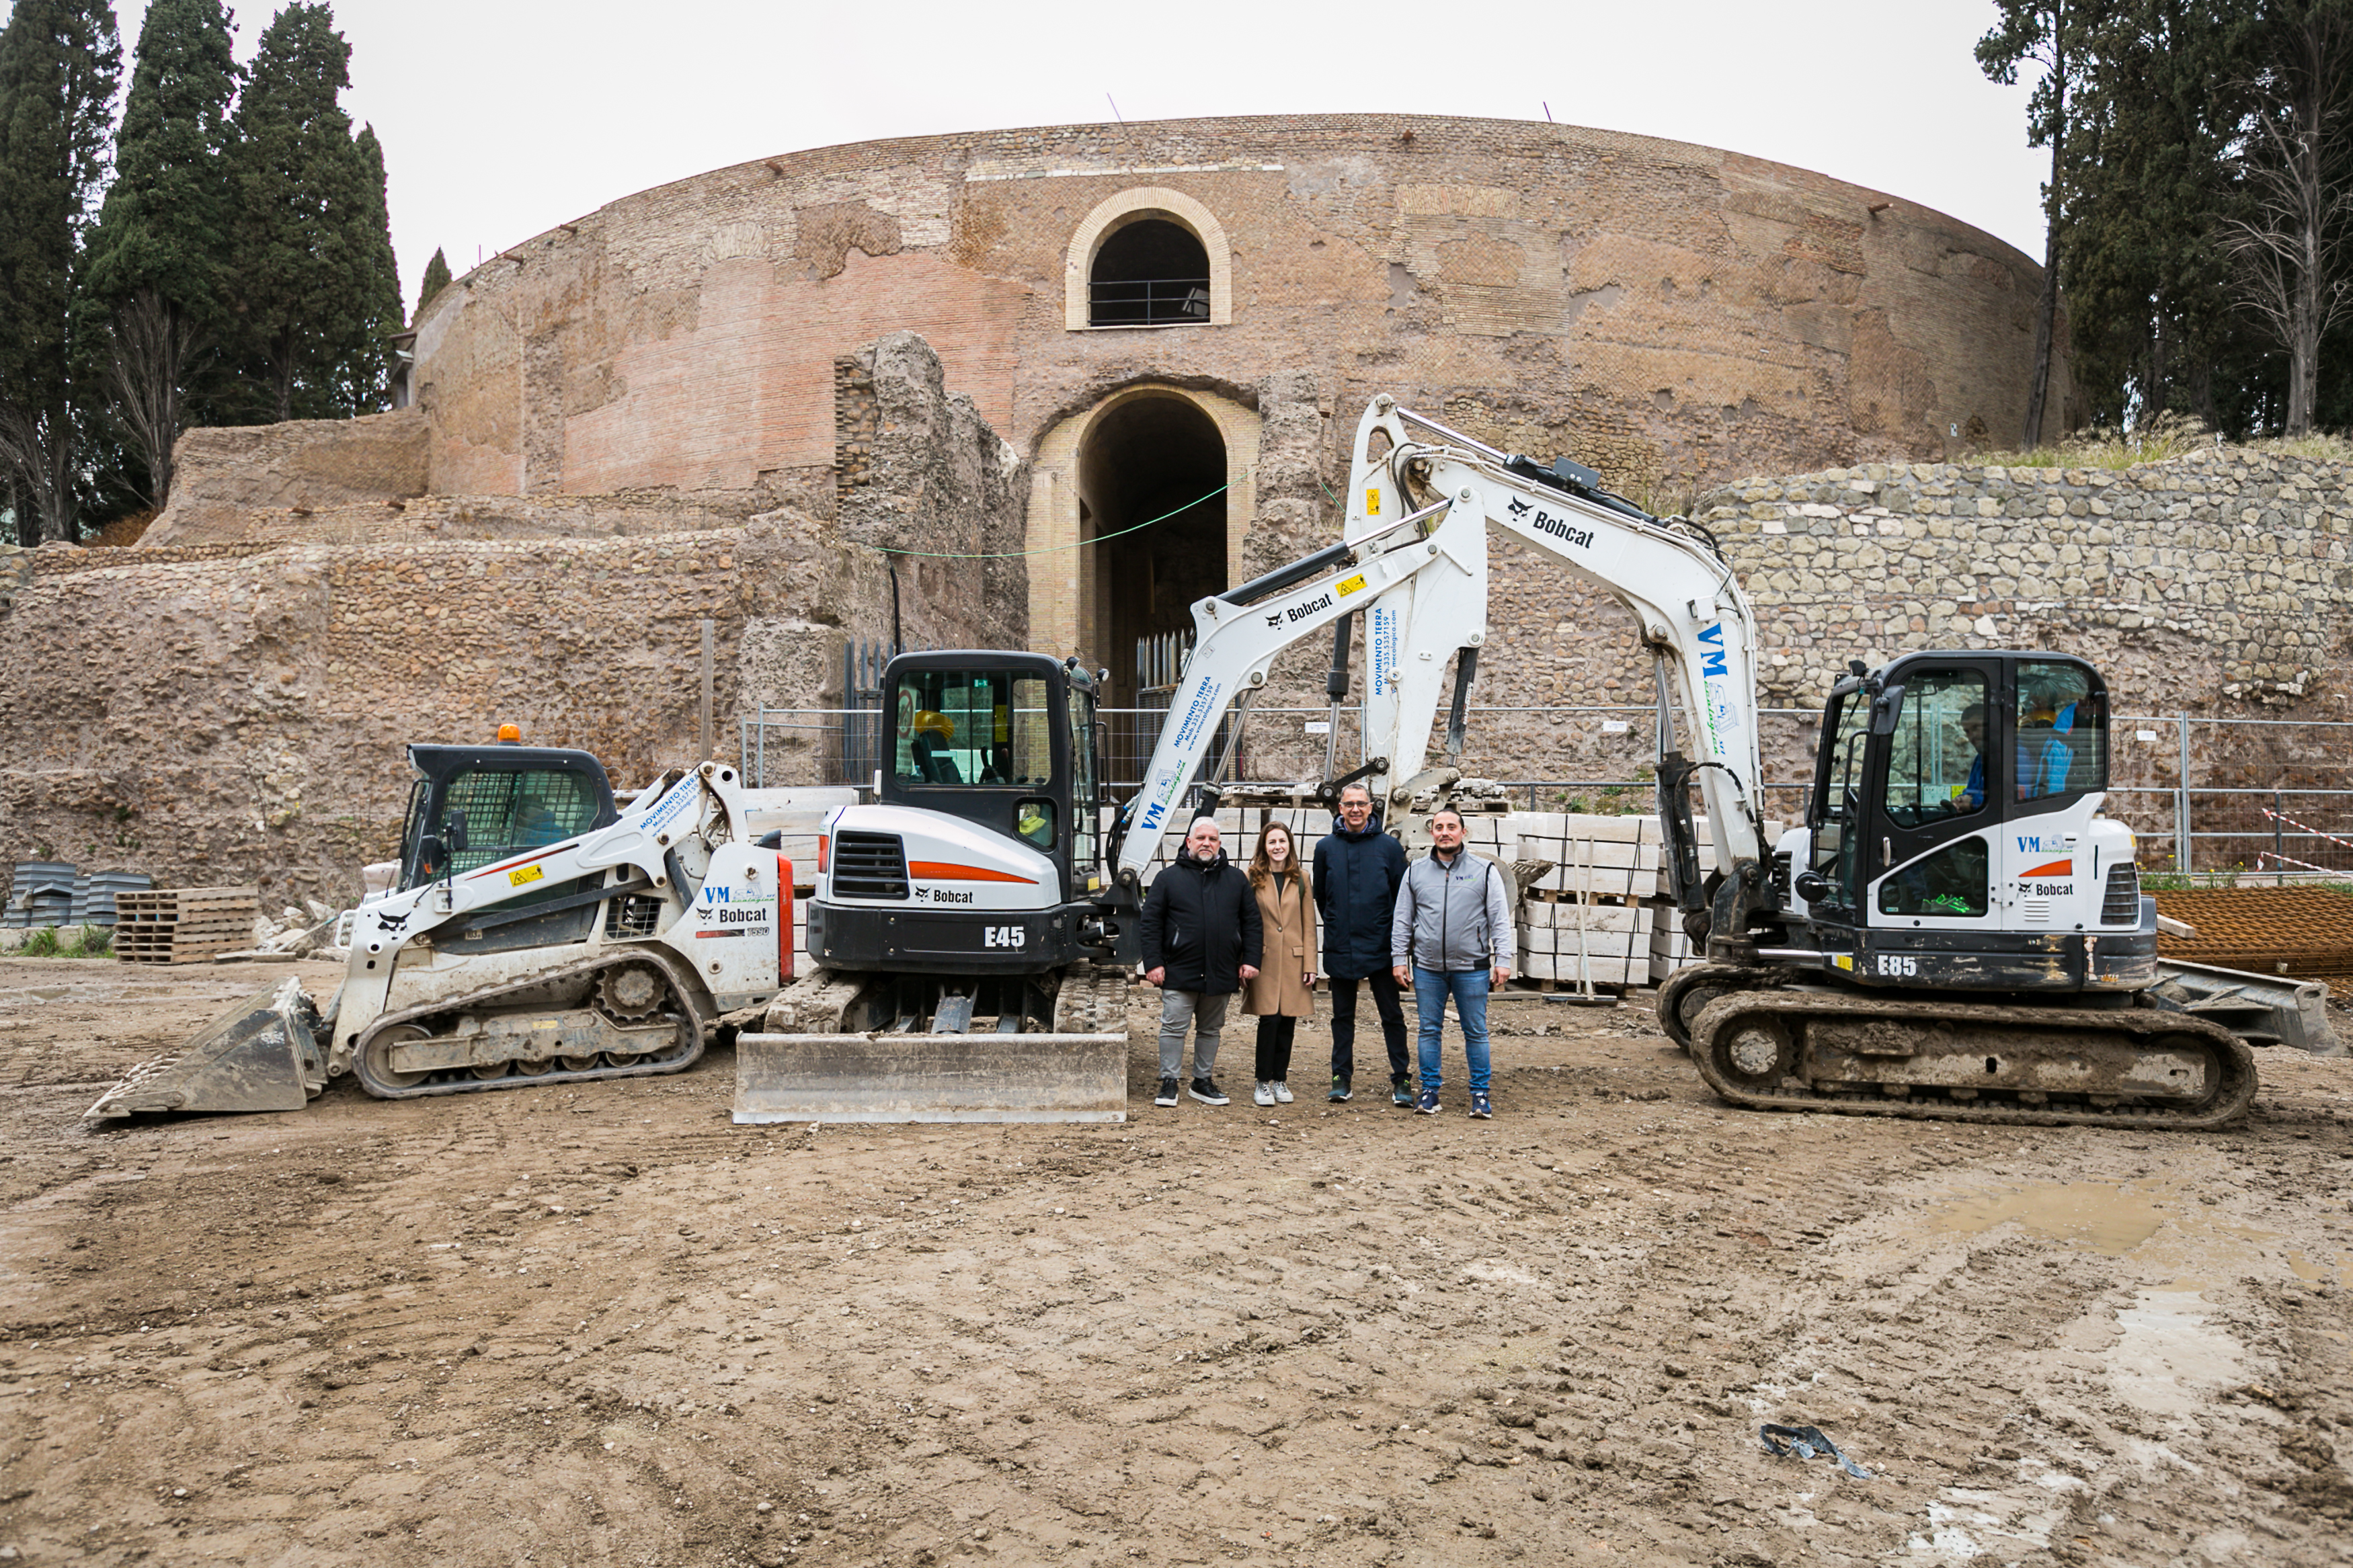 Bobcat-Maschinen unterstützen archäologische Ausgrabungen im Augustusmausoleum in Rom 